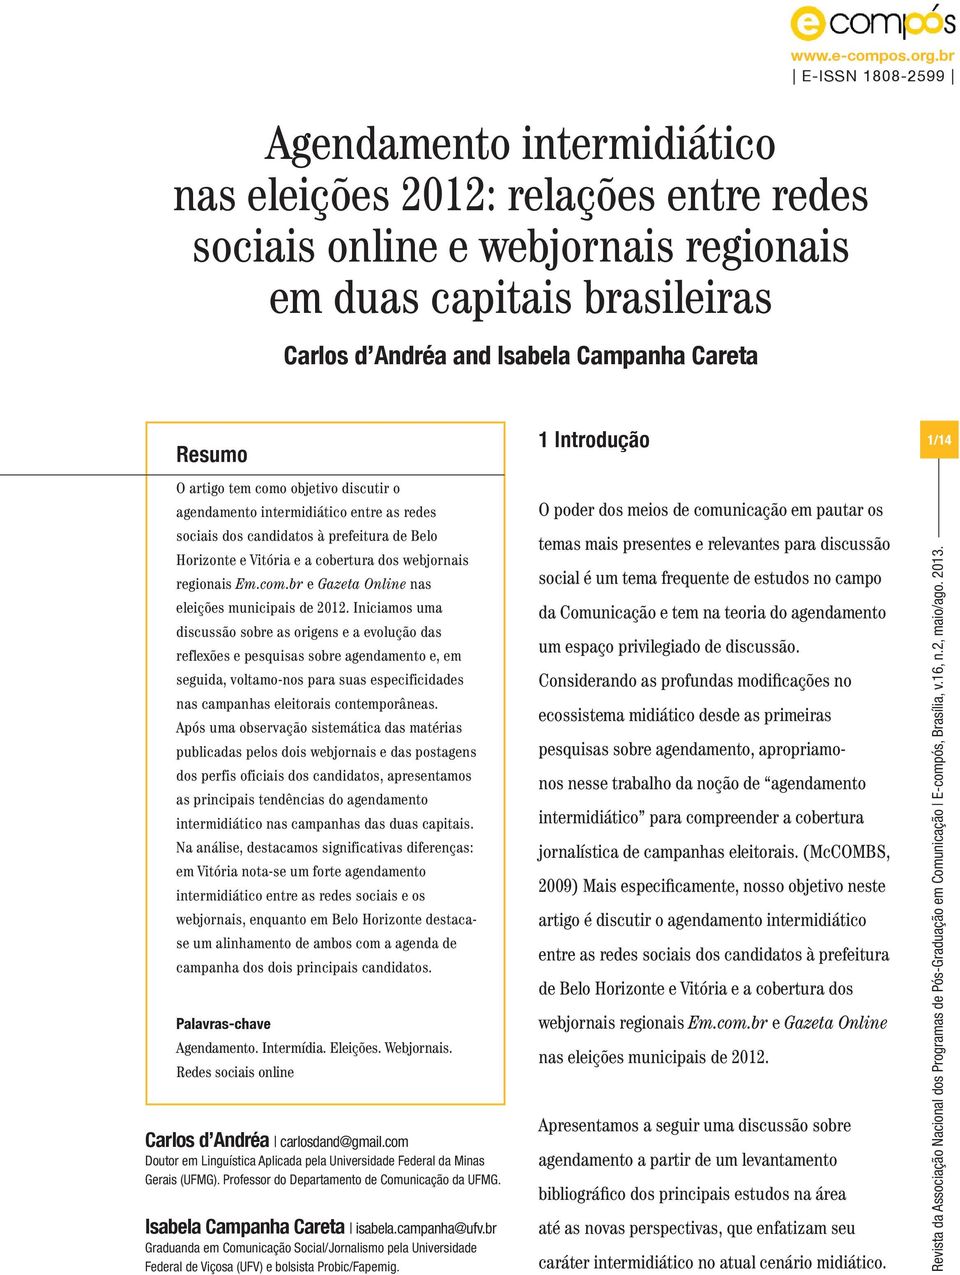 webjornais regionais Em.com.br e Gazeta Online nas eleições municipais de 2012.